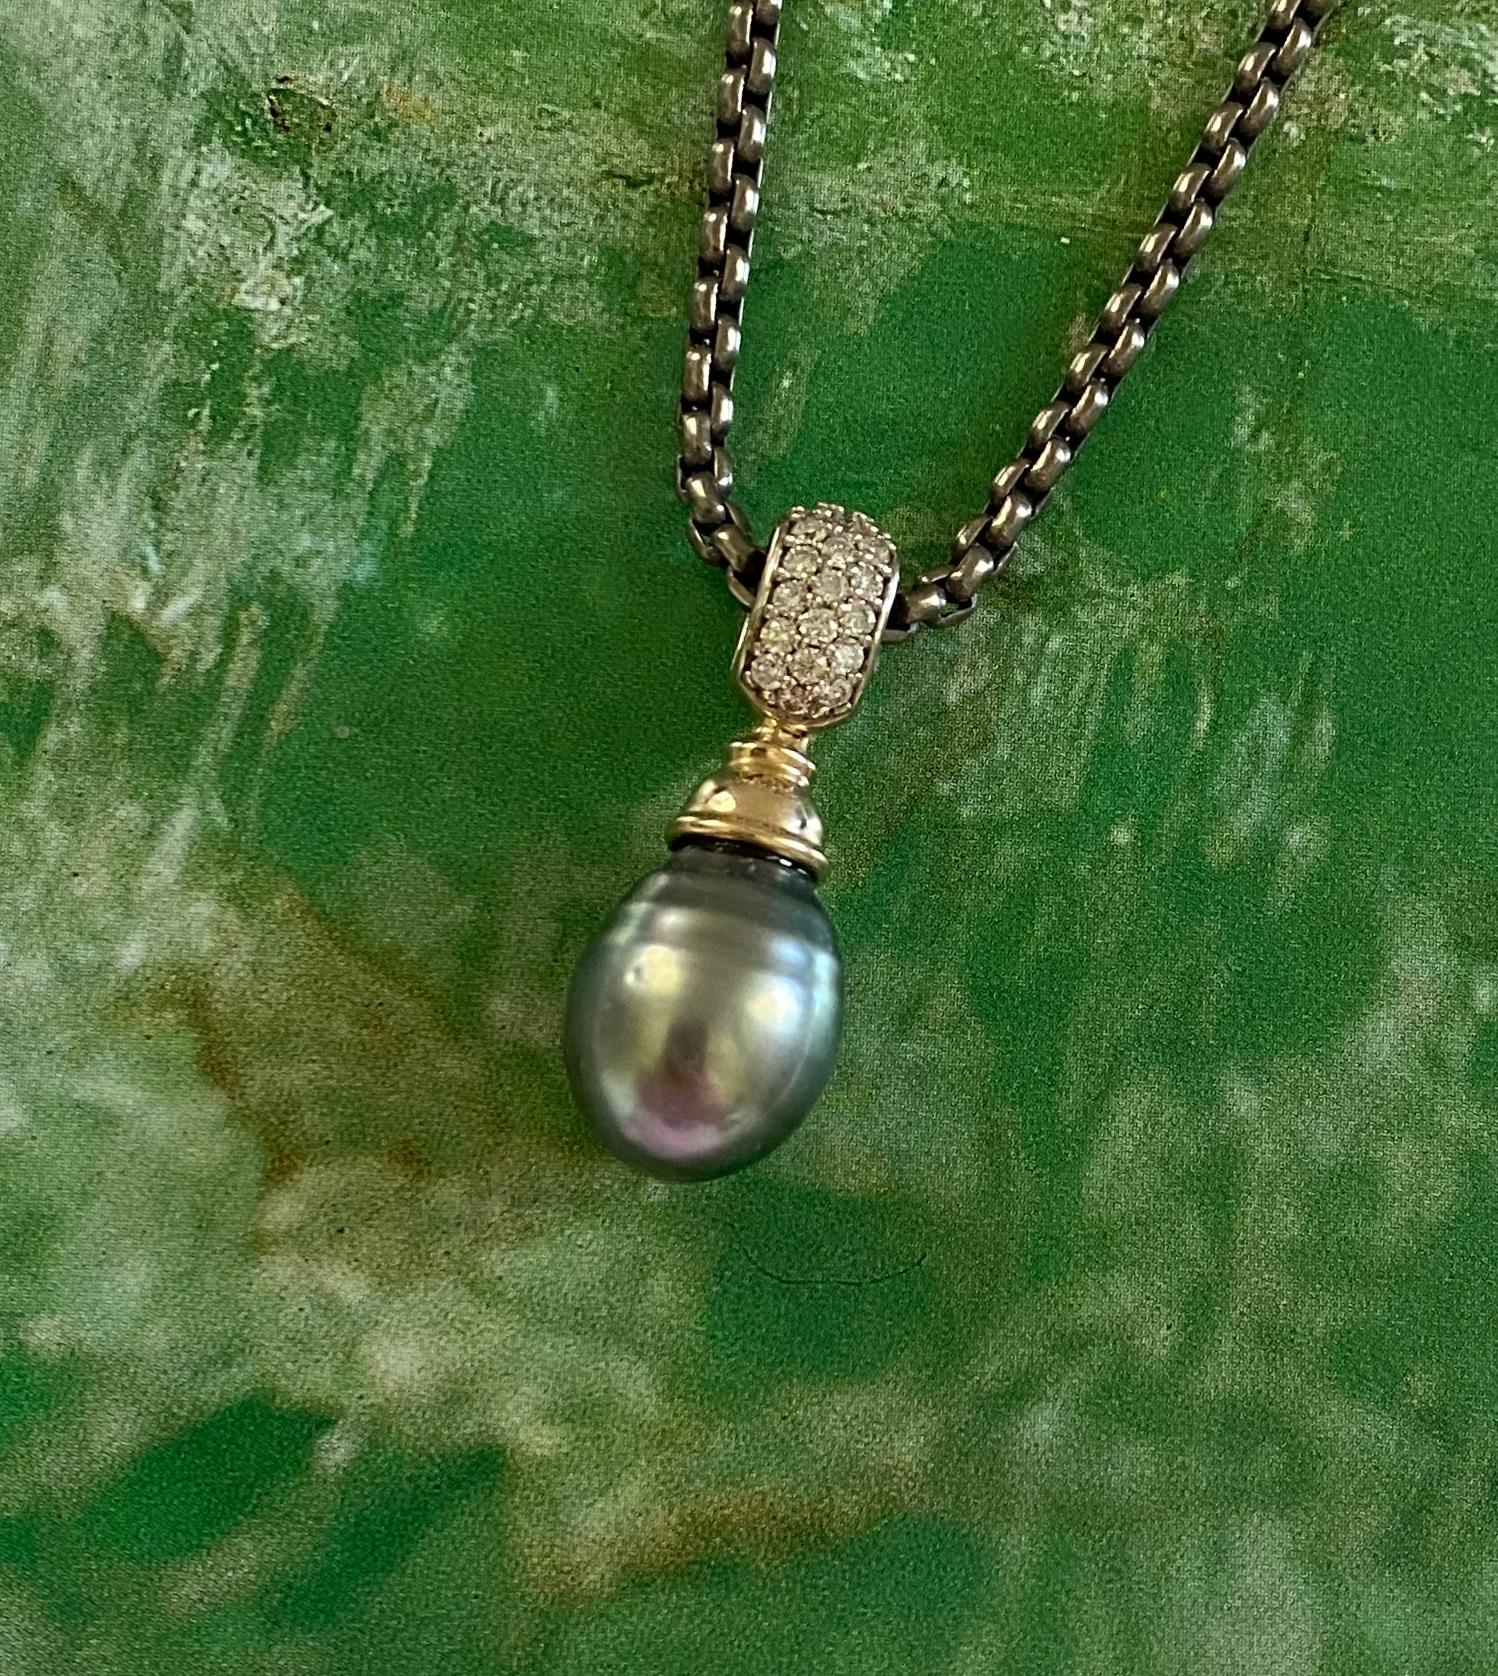 Dieser elegante Tropfenanhänger ist mit einer Tahiti-Perle besetzt.  Die Perle hat eine schöne mittelgraue Farbe mit Untertönen von Grün und Blau.  Der Edelstein hat ein paar kleine Grübchen, besitzt aber einen reichen Glanz, der ihn zu einer sehr